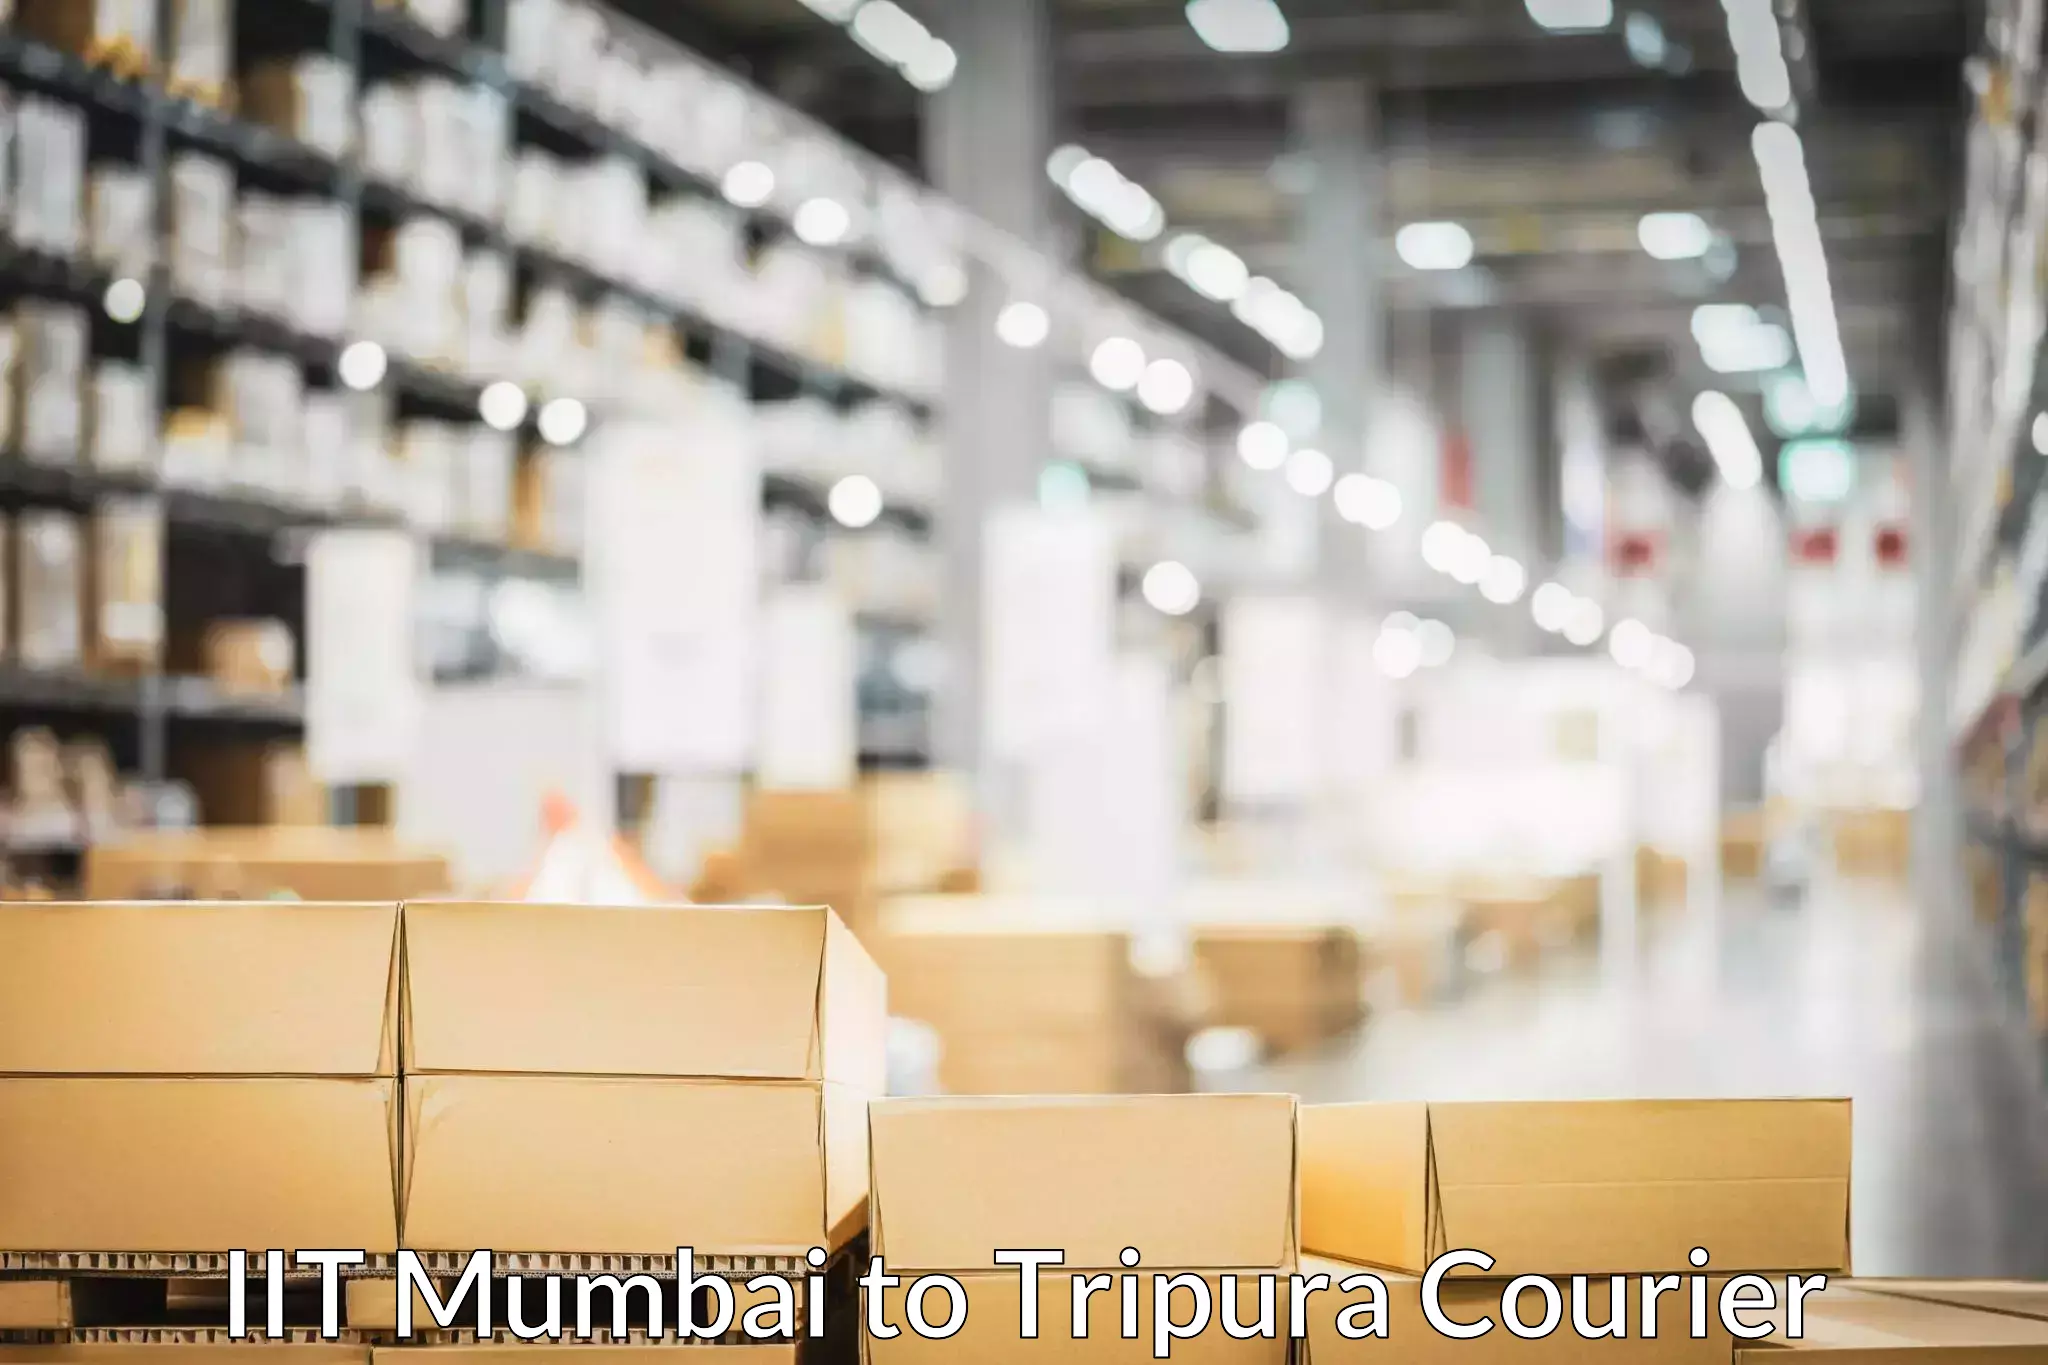 Skilled furniture transporters in IIT Mumbai to Manughat